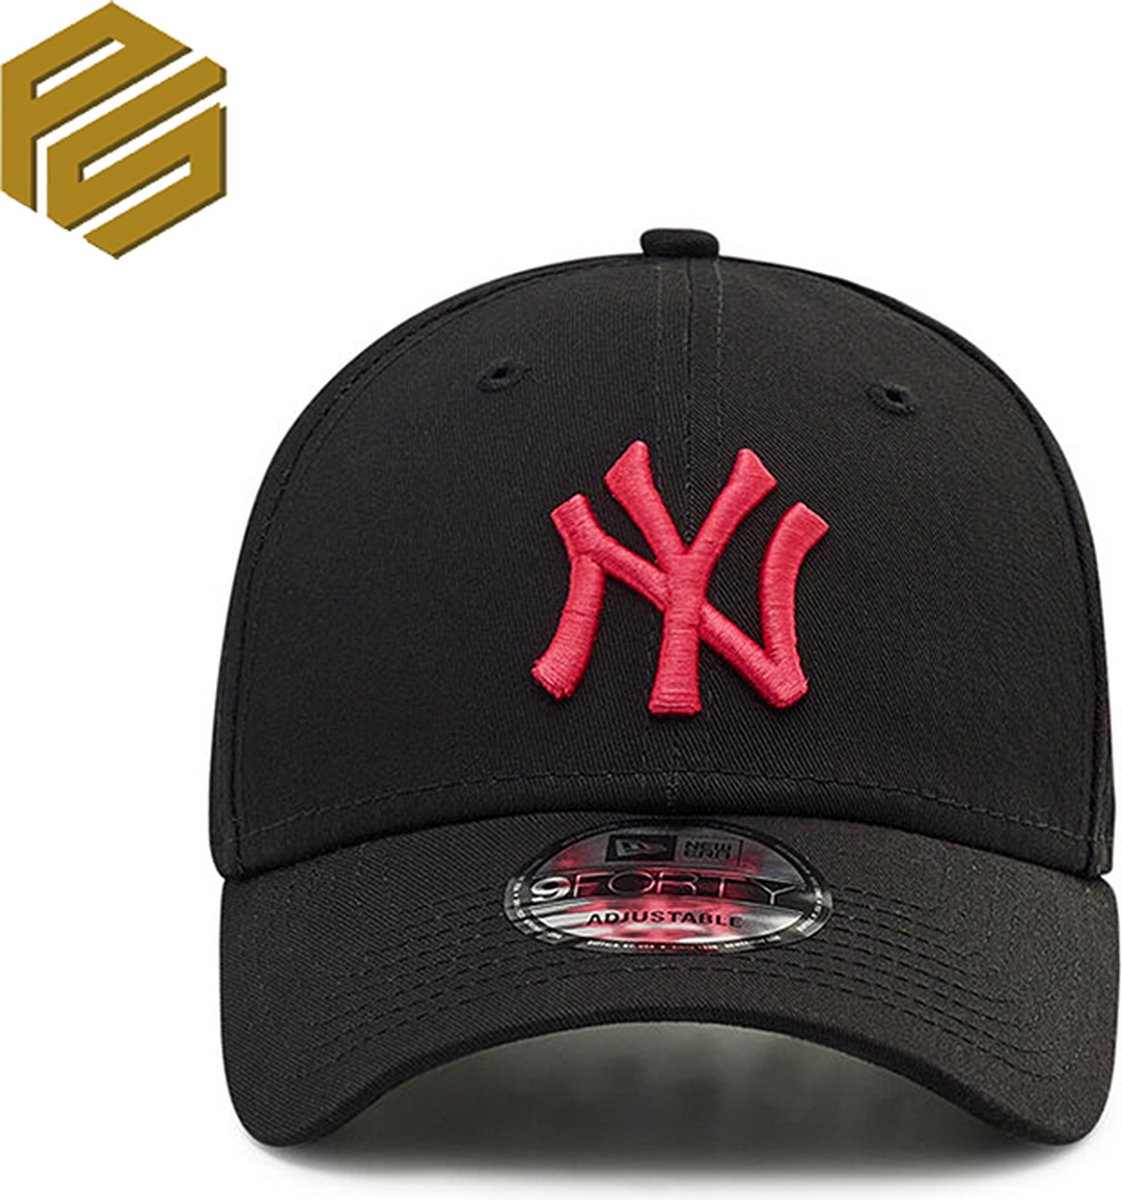 NY CAP